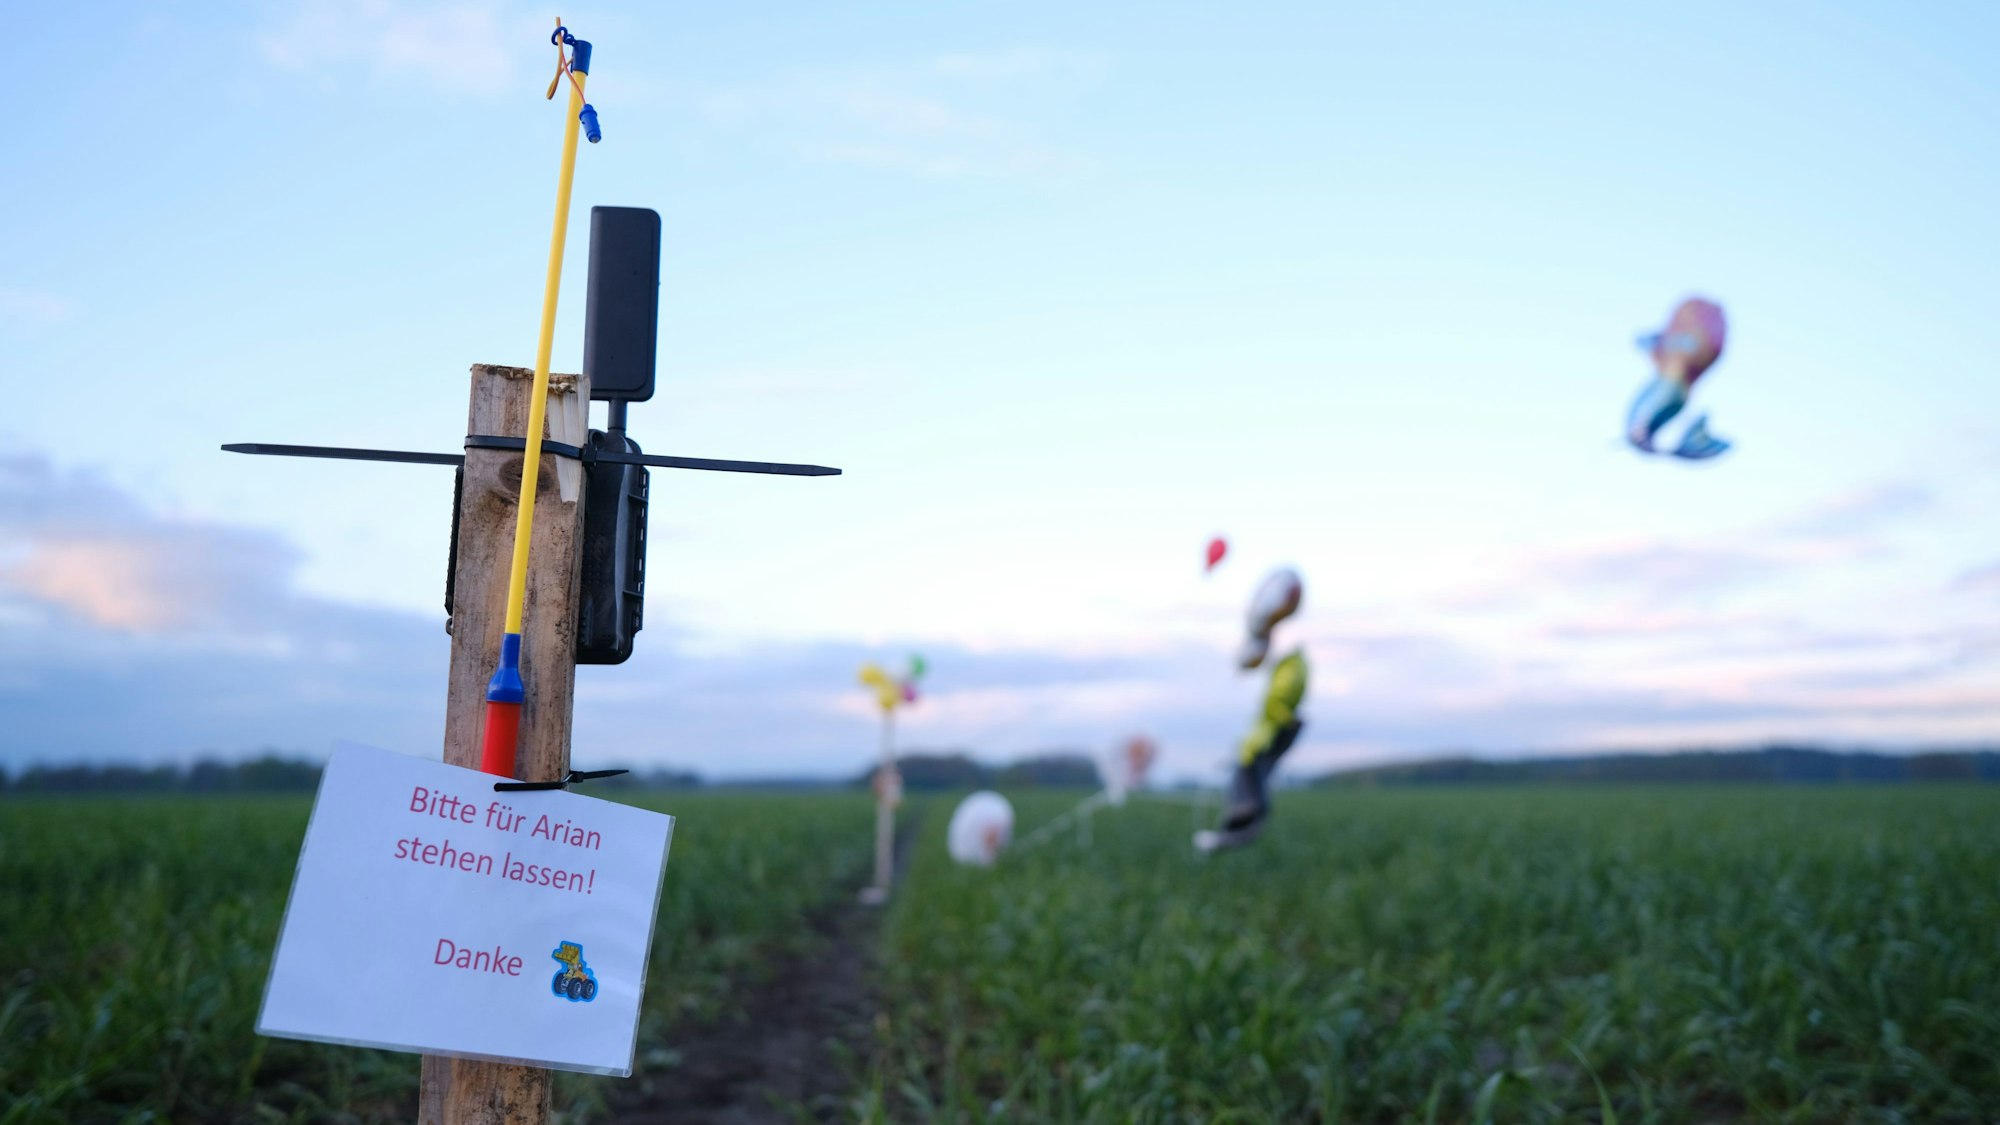 Ballons, Süßigkeiten und eine Wildkamera stehen auf einem Feld bei Bremervörde. Von einem vermissten sechs Jahre alten Jungen aus dem niedersächsischen Bremervörde fehlt noch immer jede Spur.